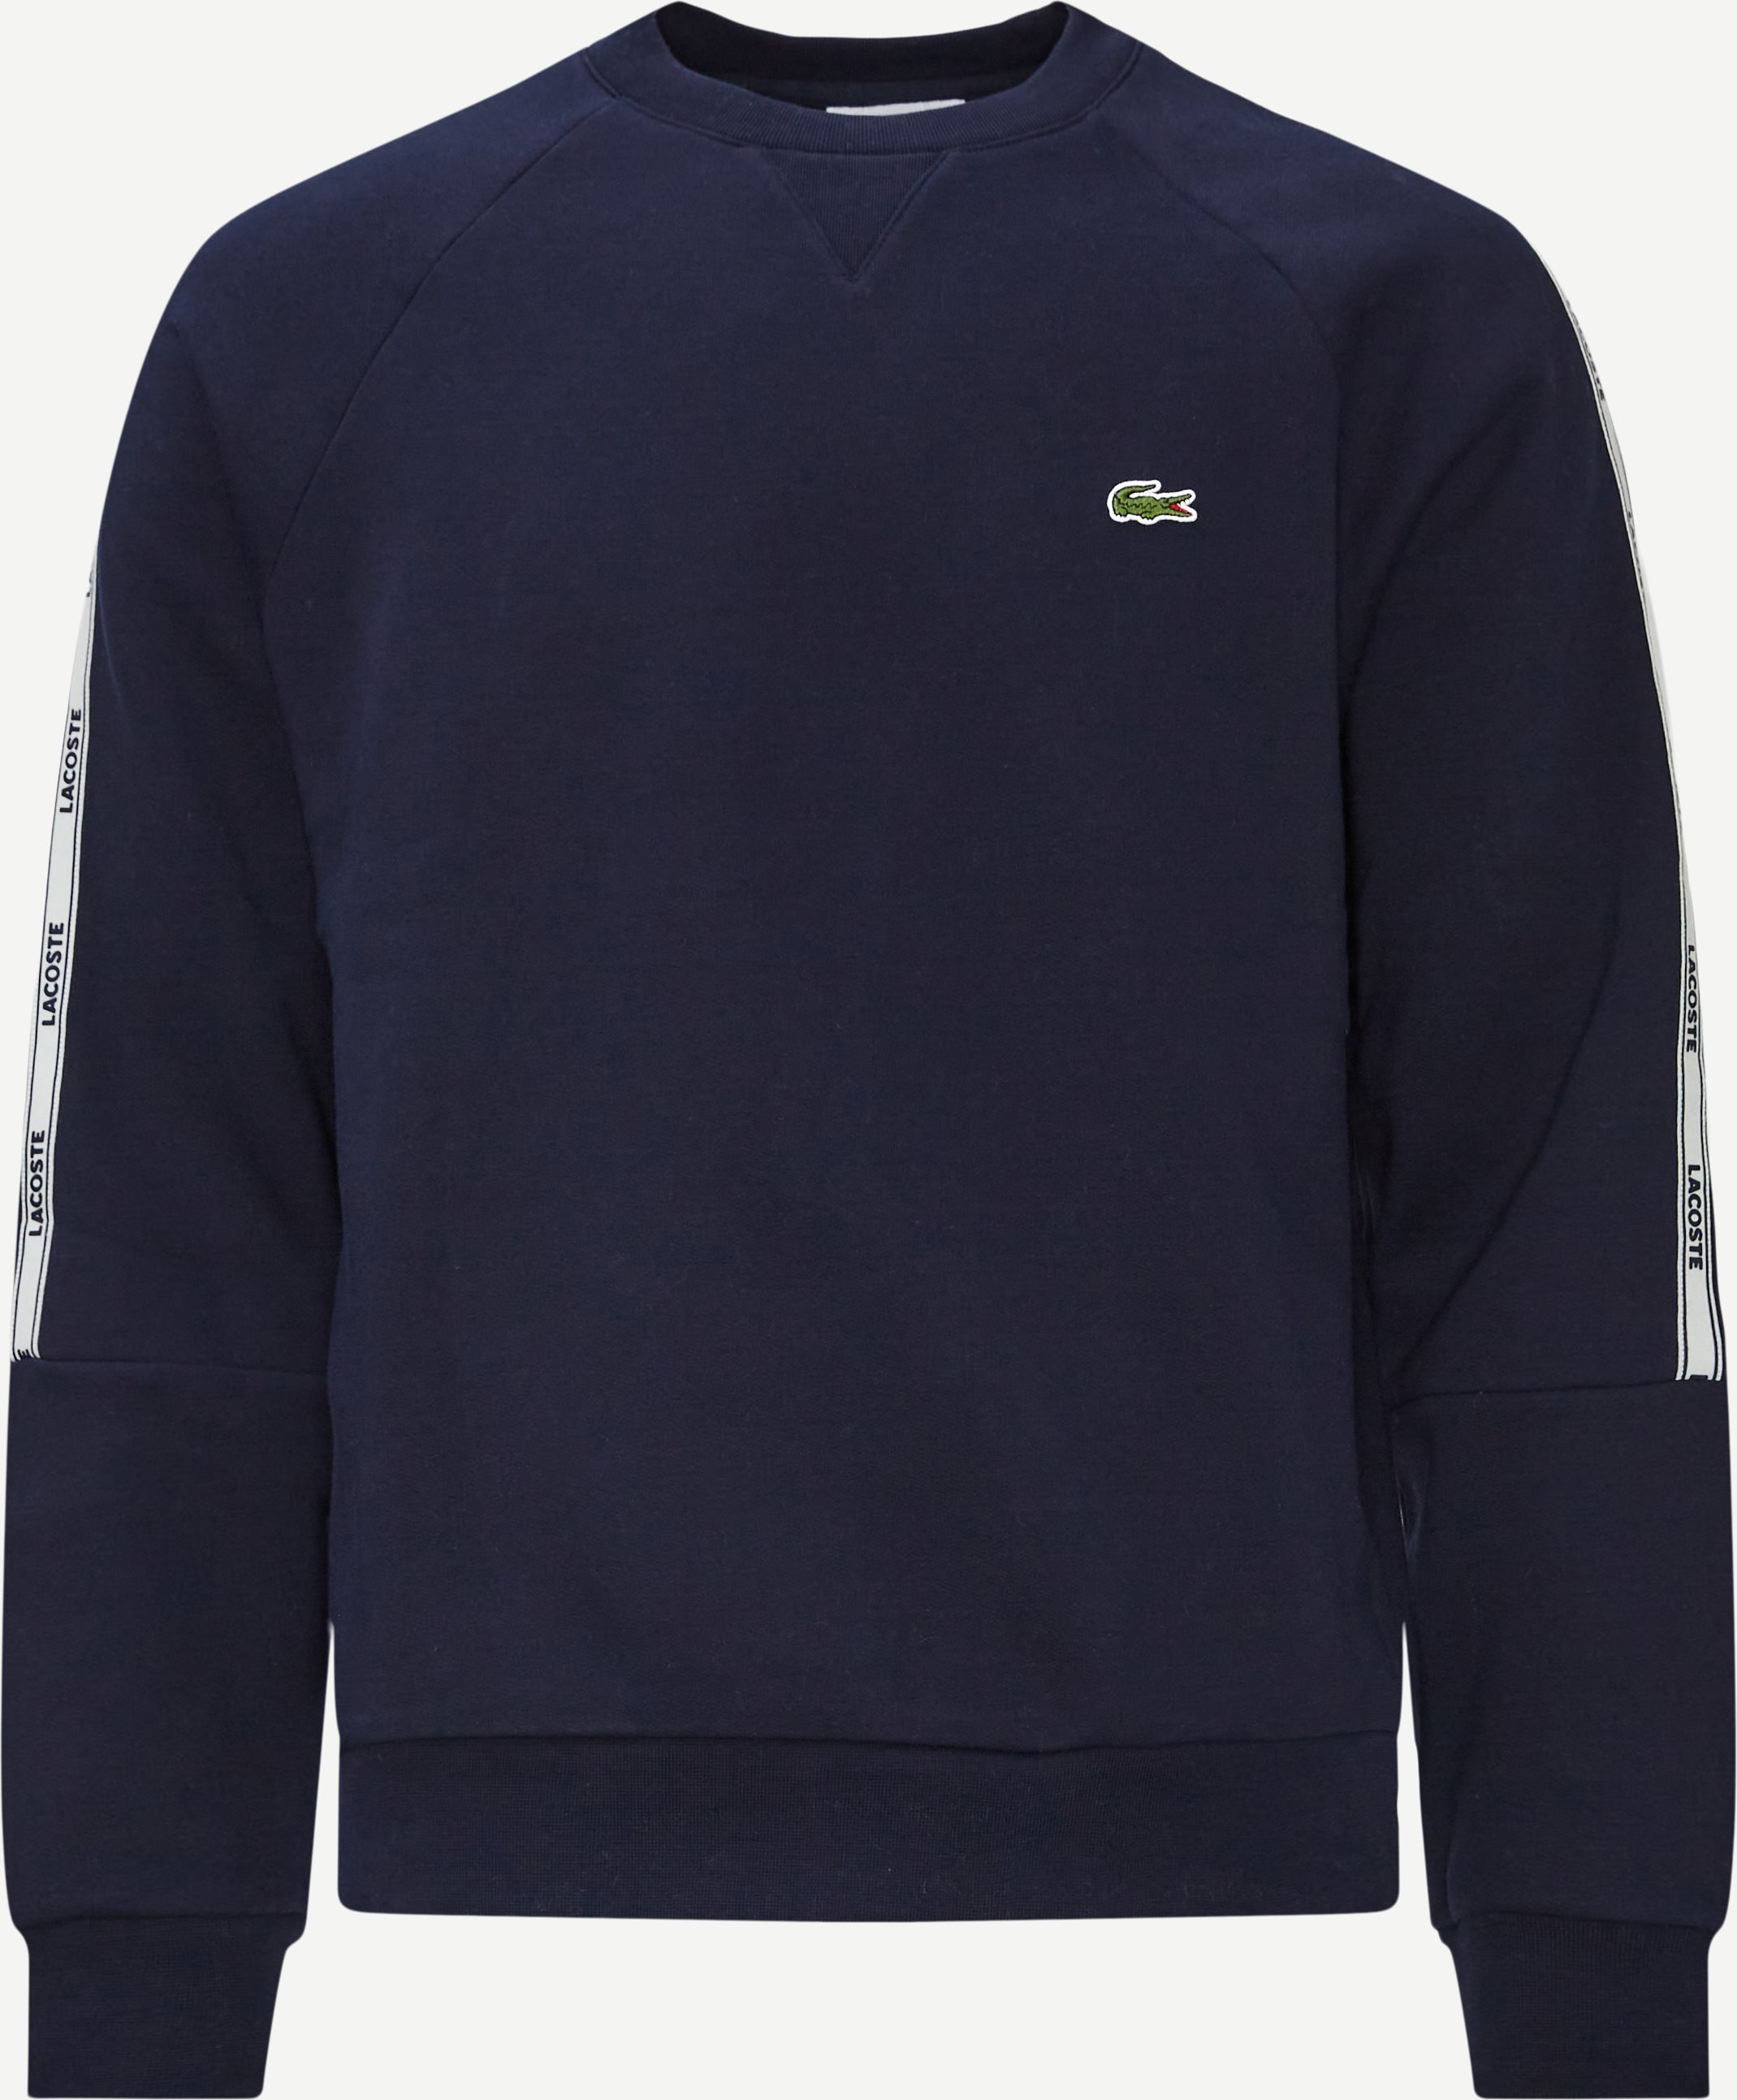 Branded Bands Fleece Sweatshirt - Sweatshirts - Classic fit - Blå